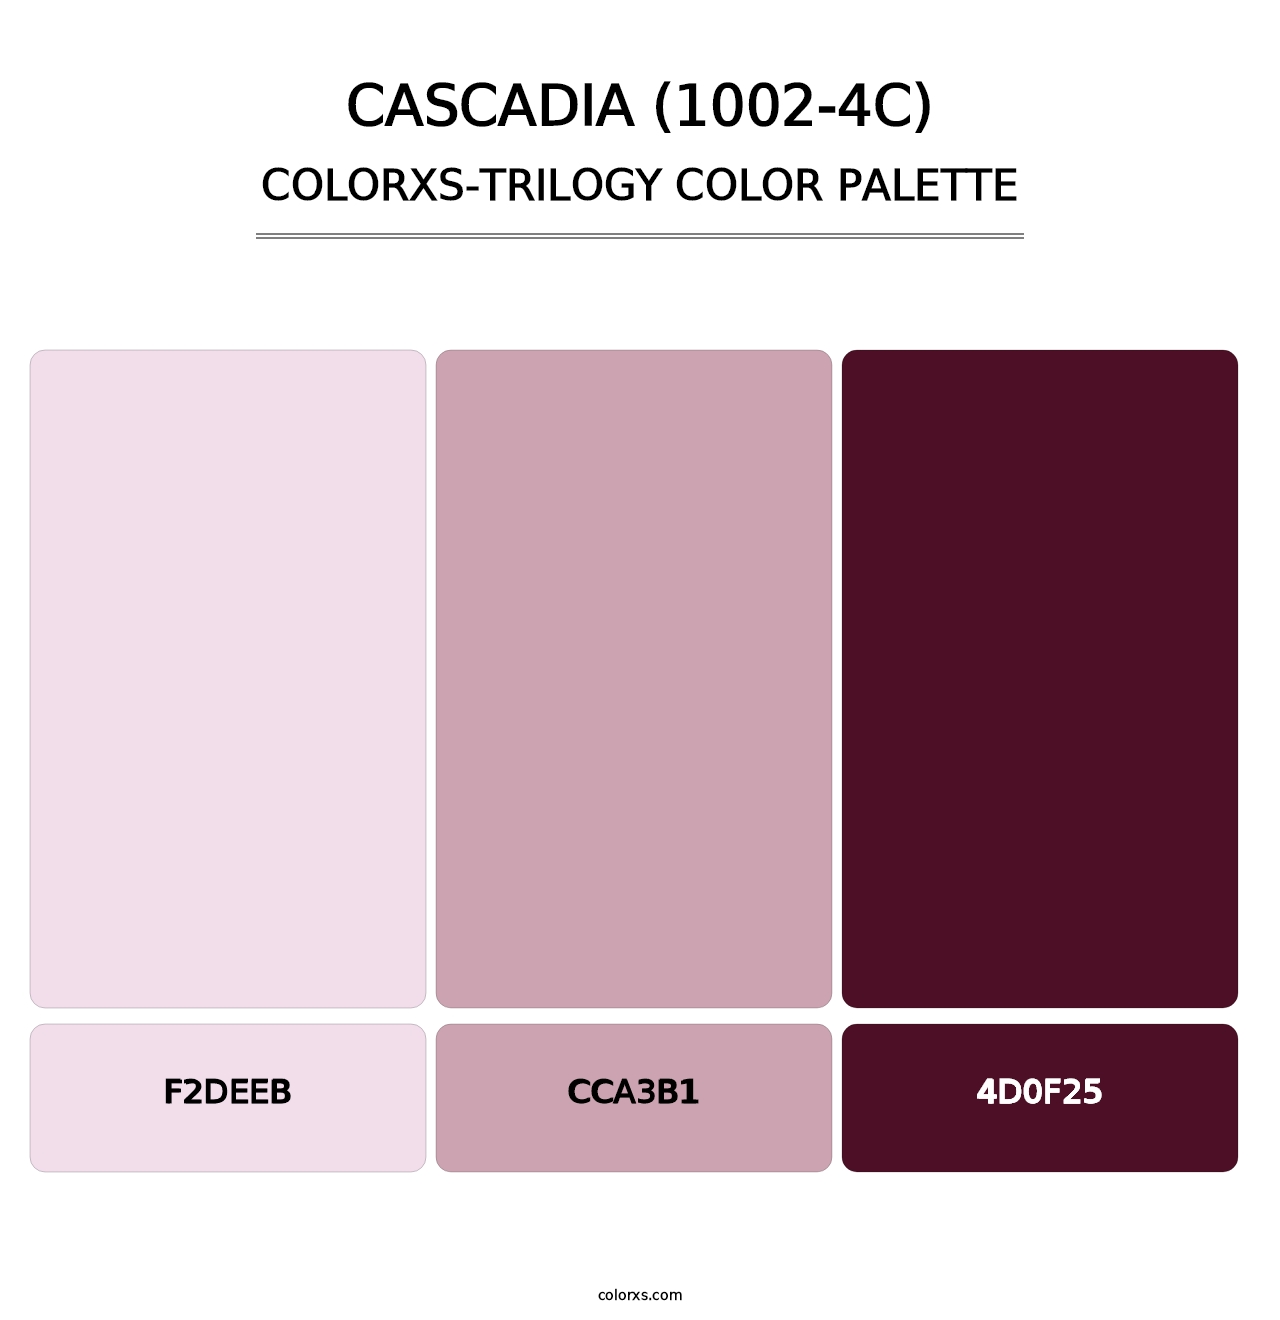 Cascadia (1002-4C) - Colorxs Trilogy Palette